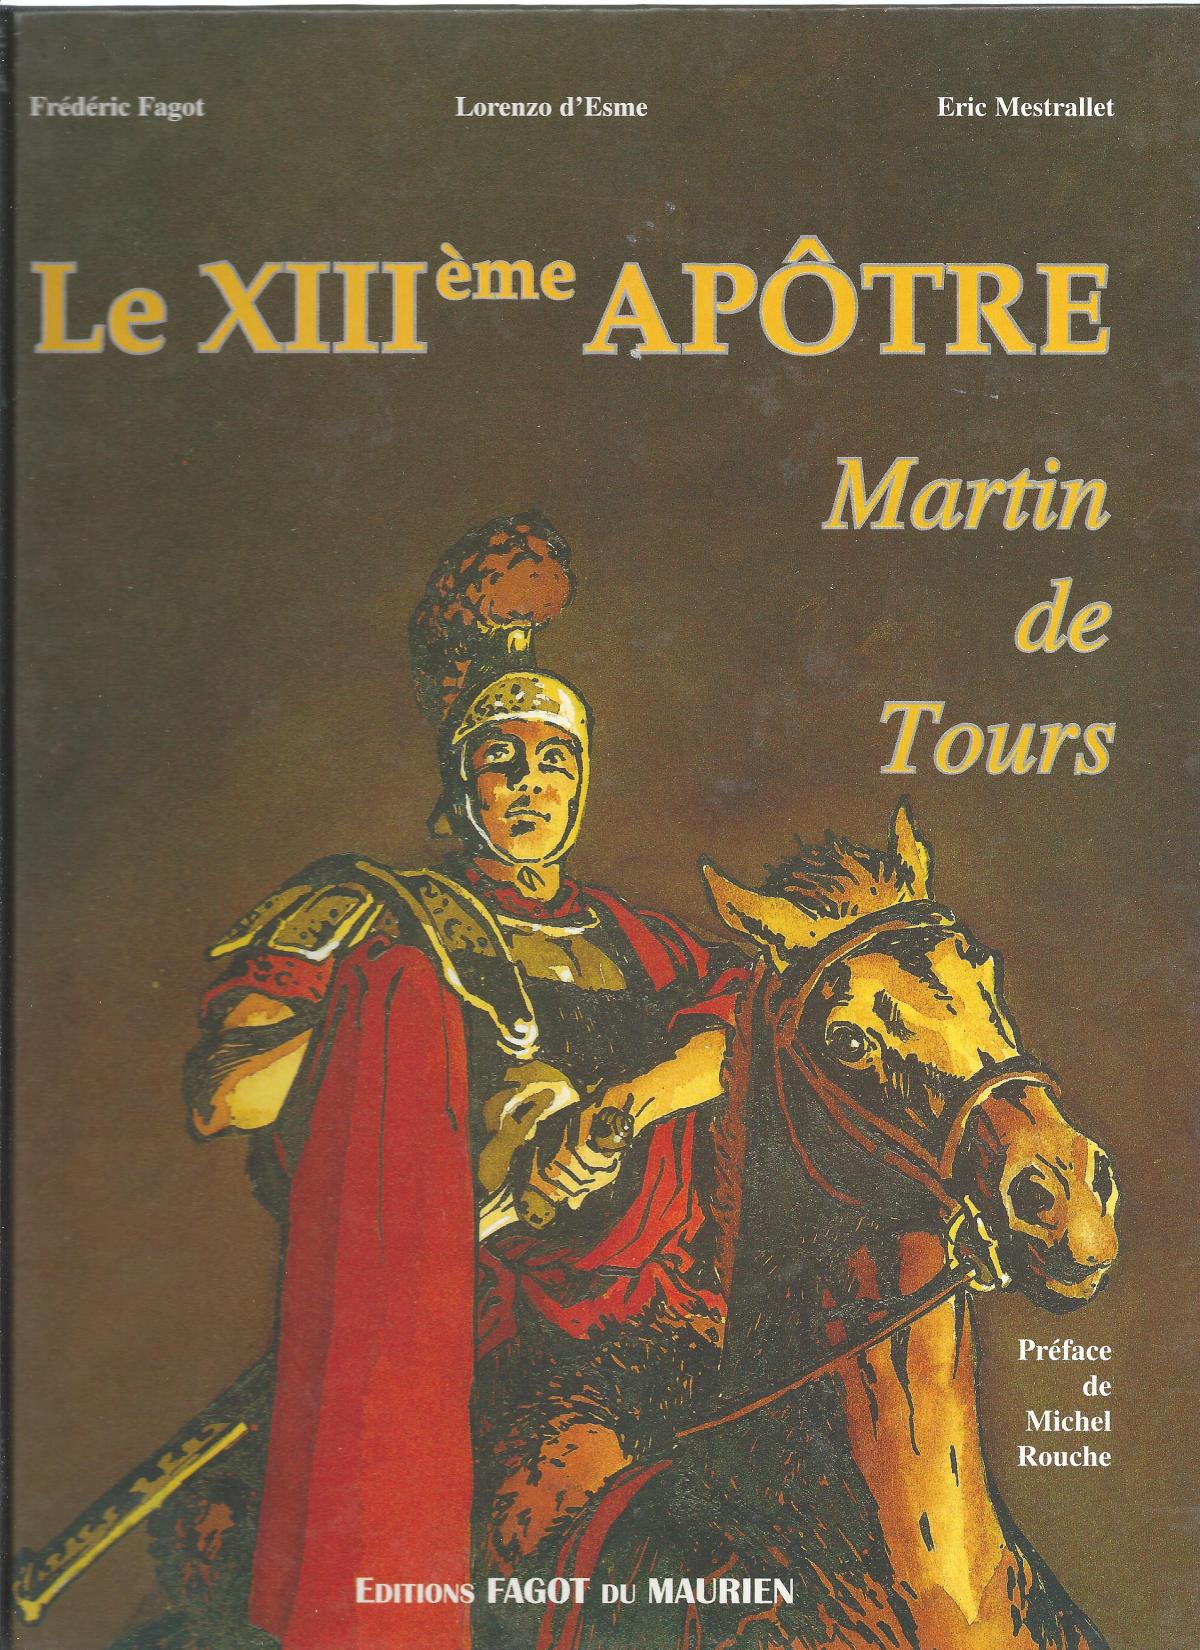 Le XIIIème apôtre, Martin de Tours